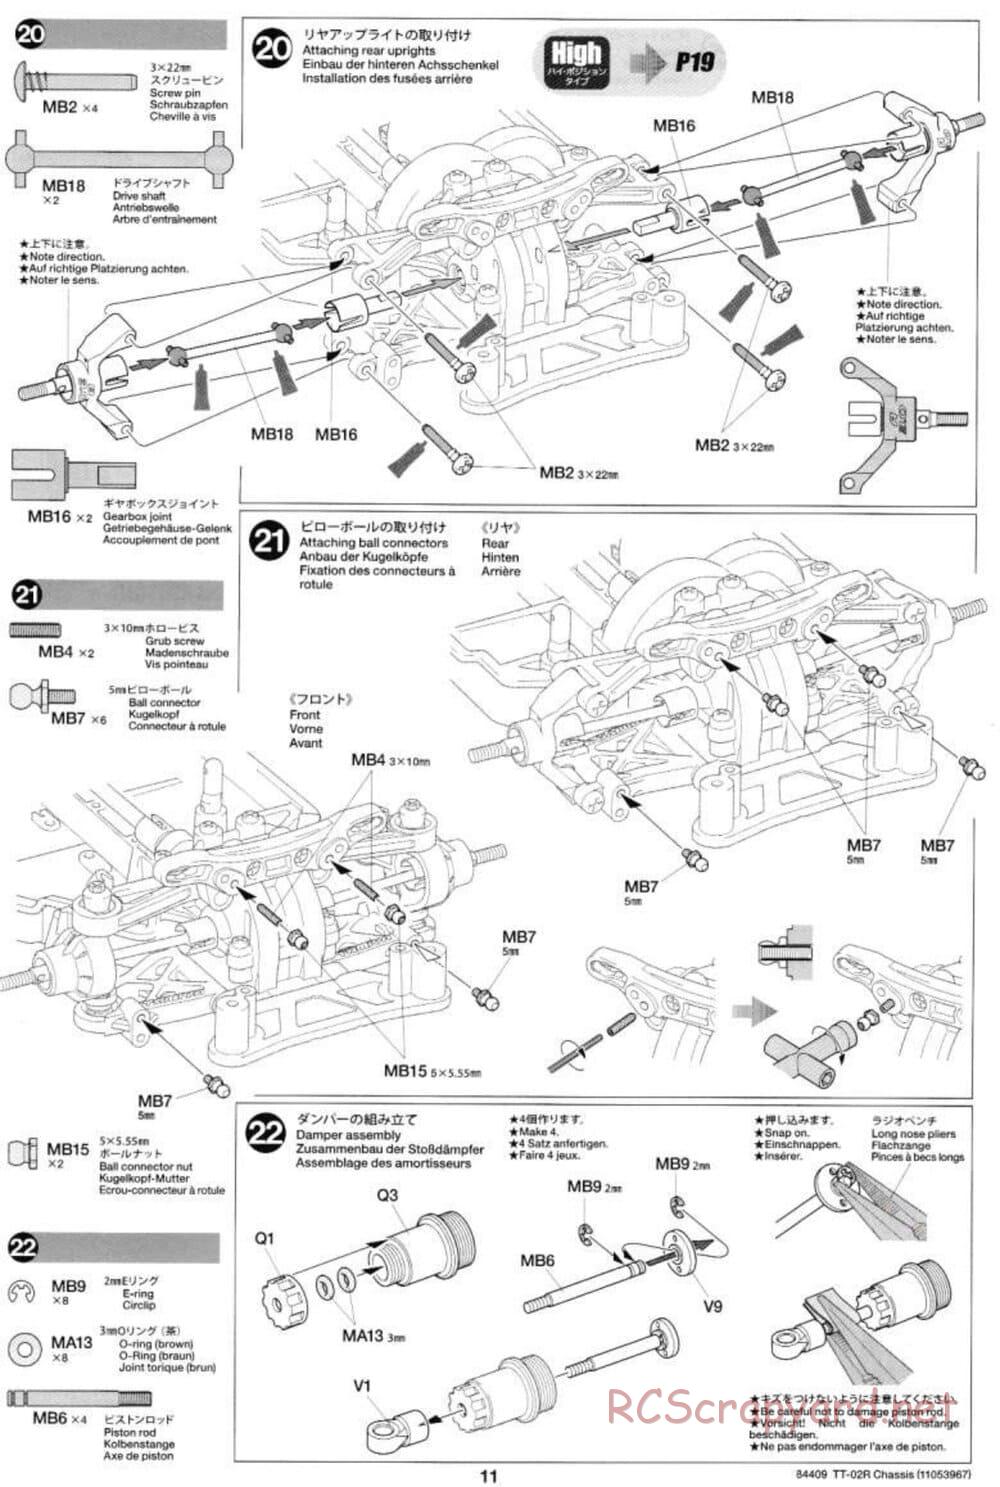 Tamiya - TT-02R Chassis - Manual - Page 11